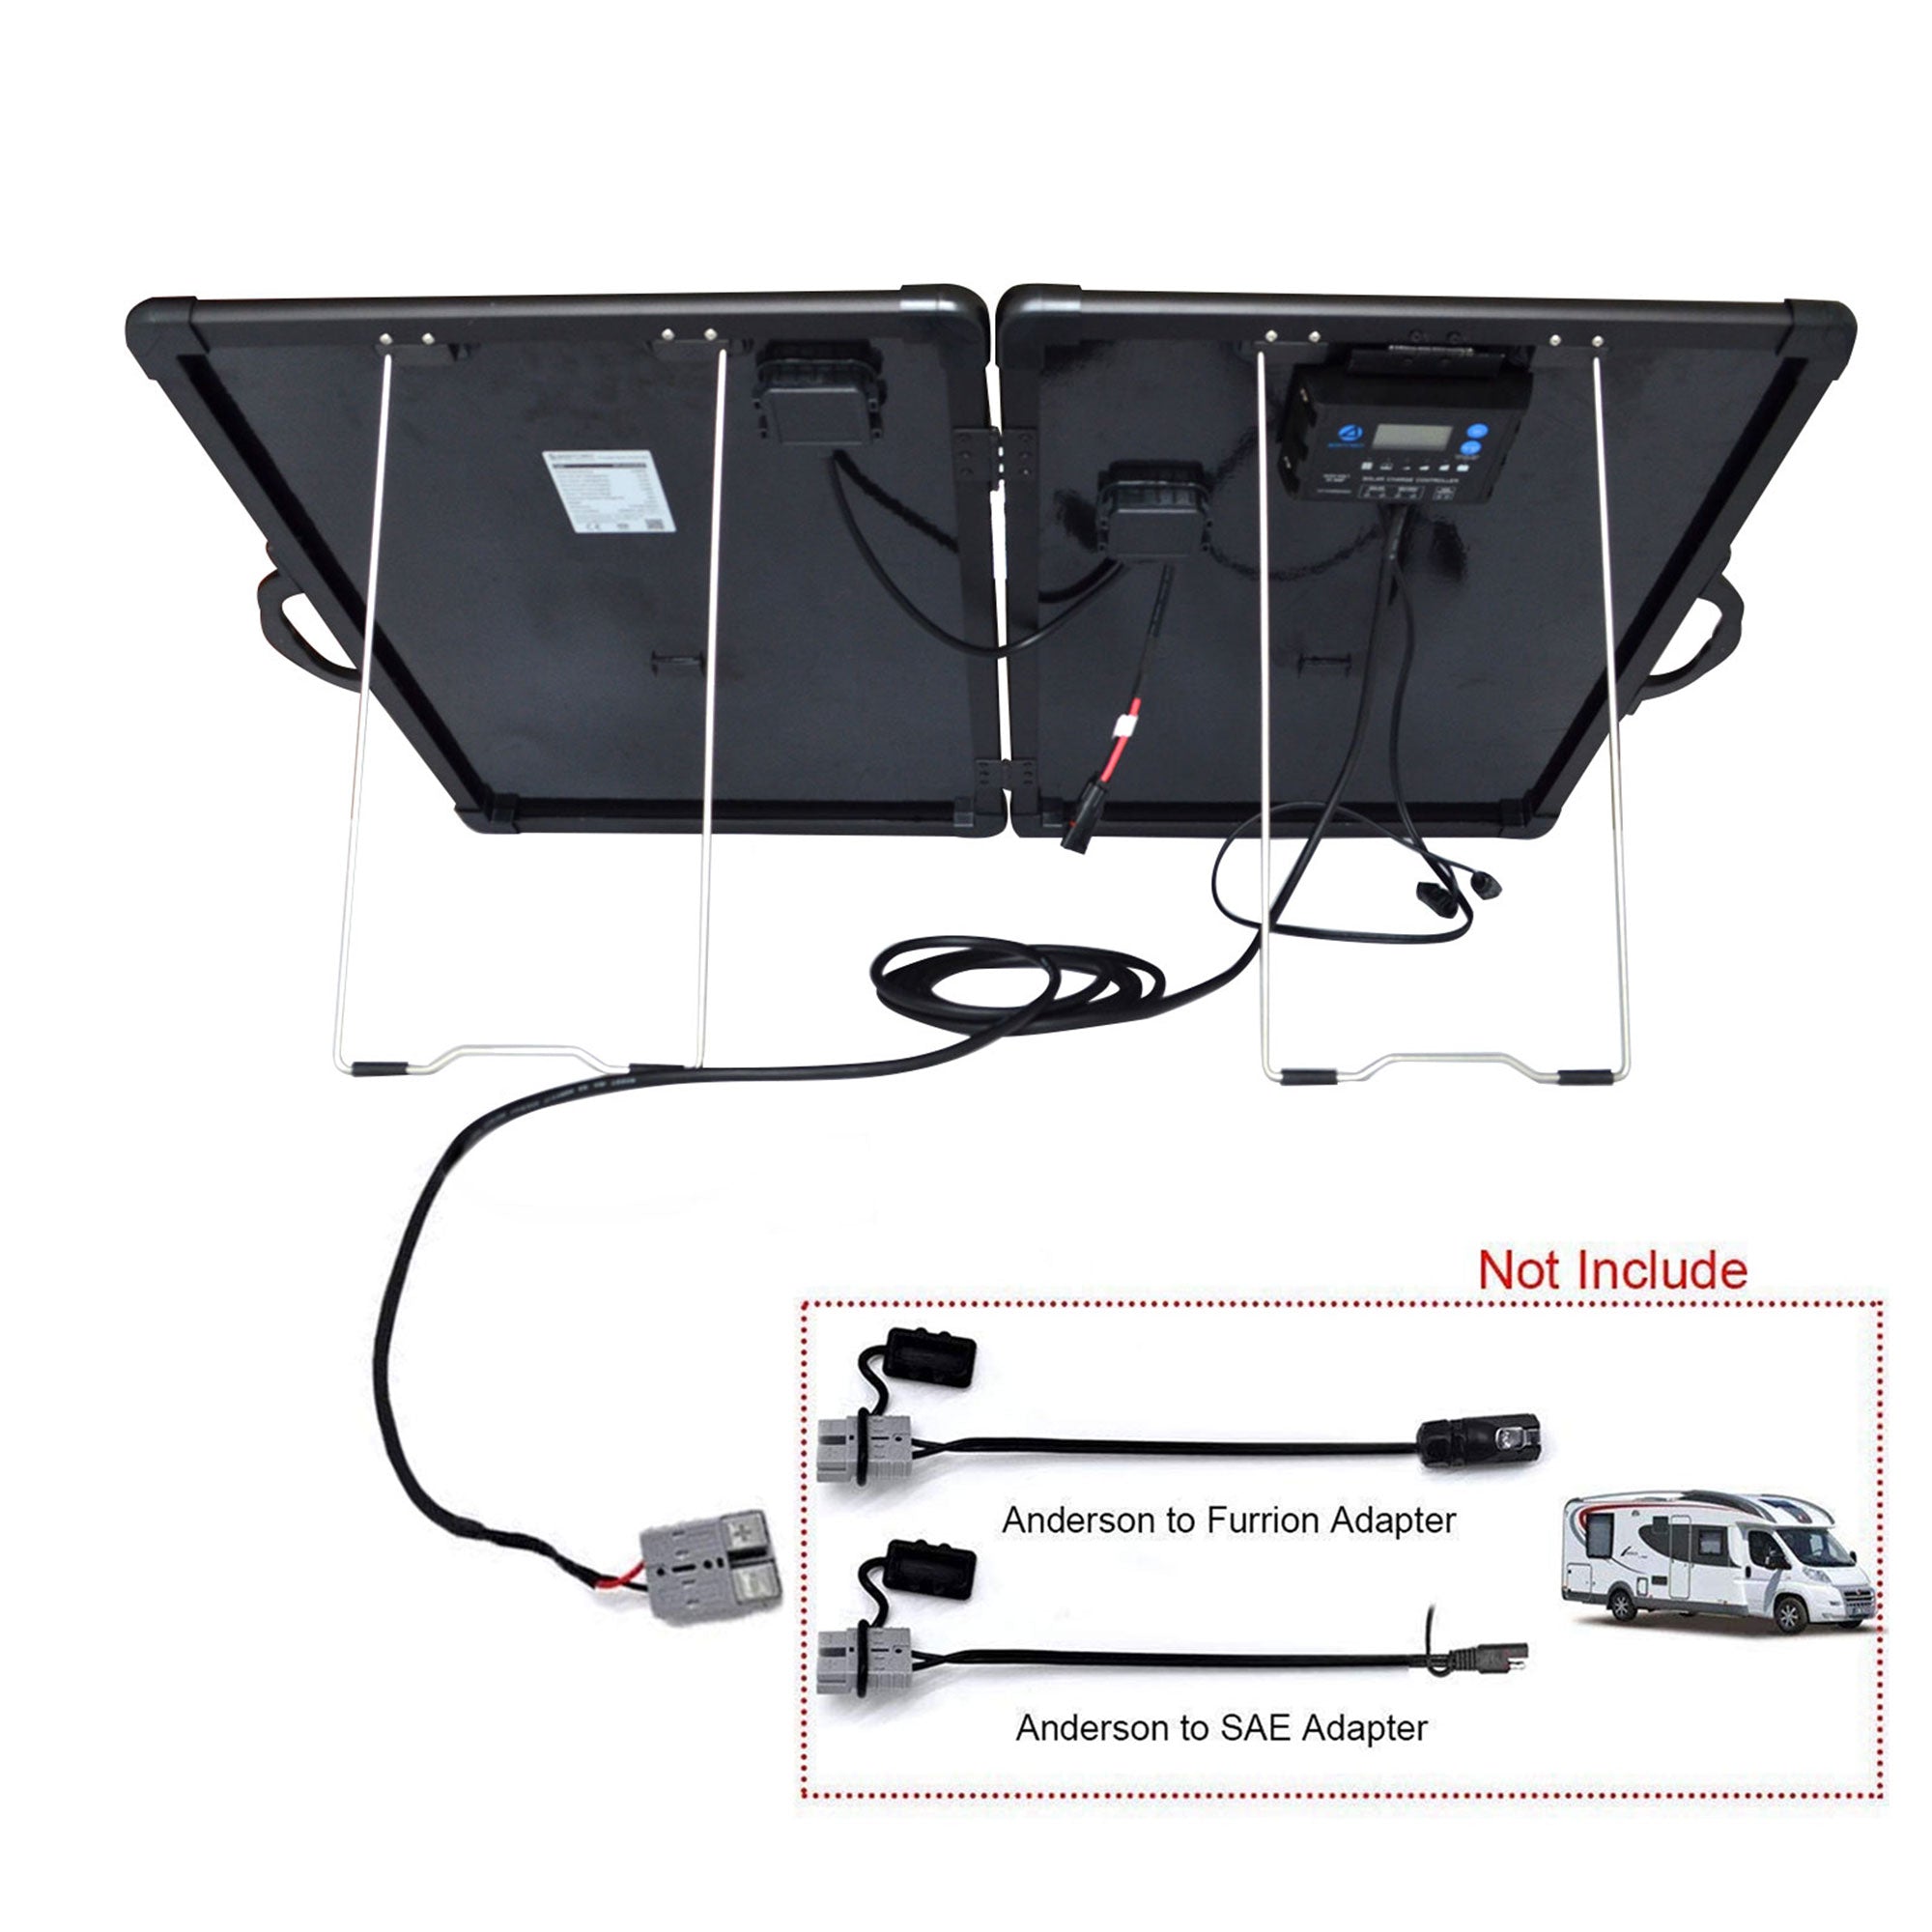 ACOPower Plk Kit de panel solar portátil de 200 W, maletín liviano con controlador de carga de 20 A (diseño compacto)